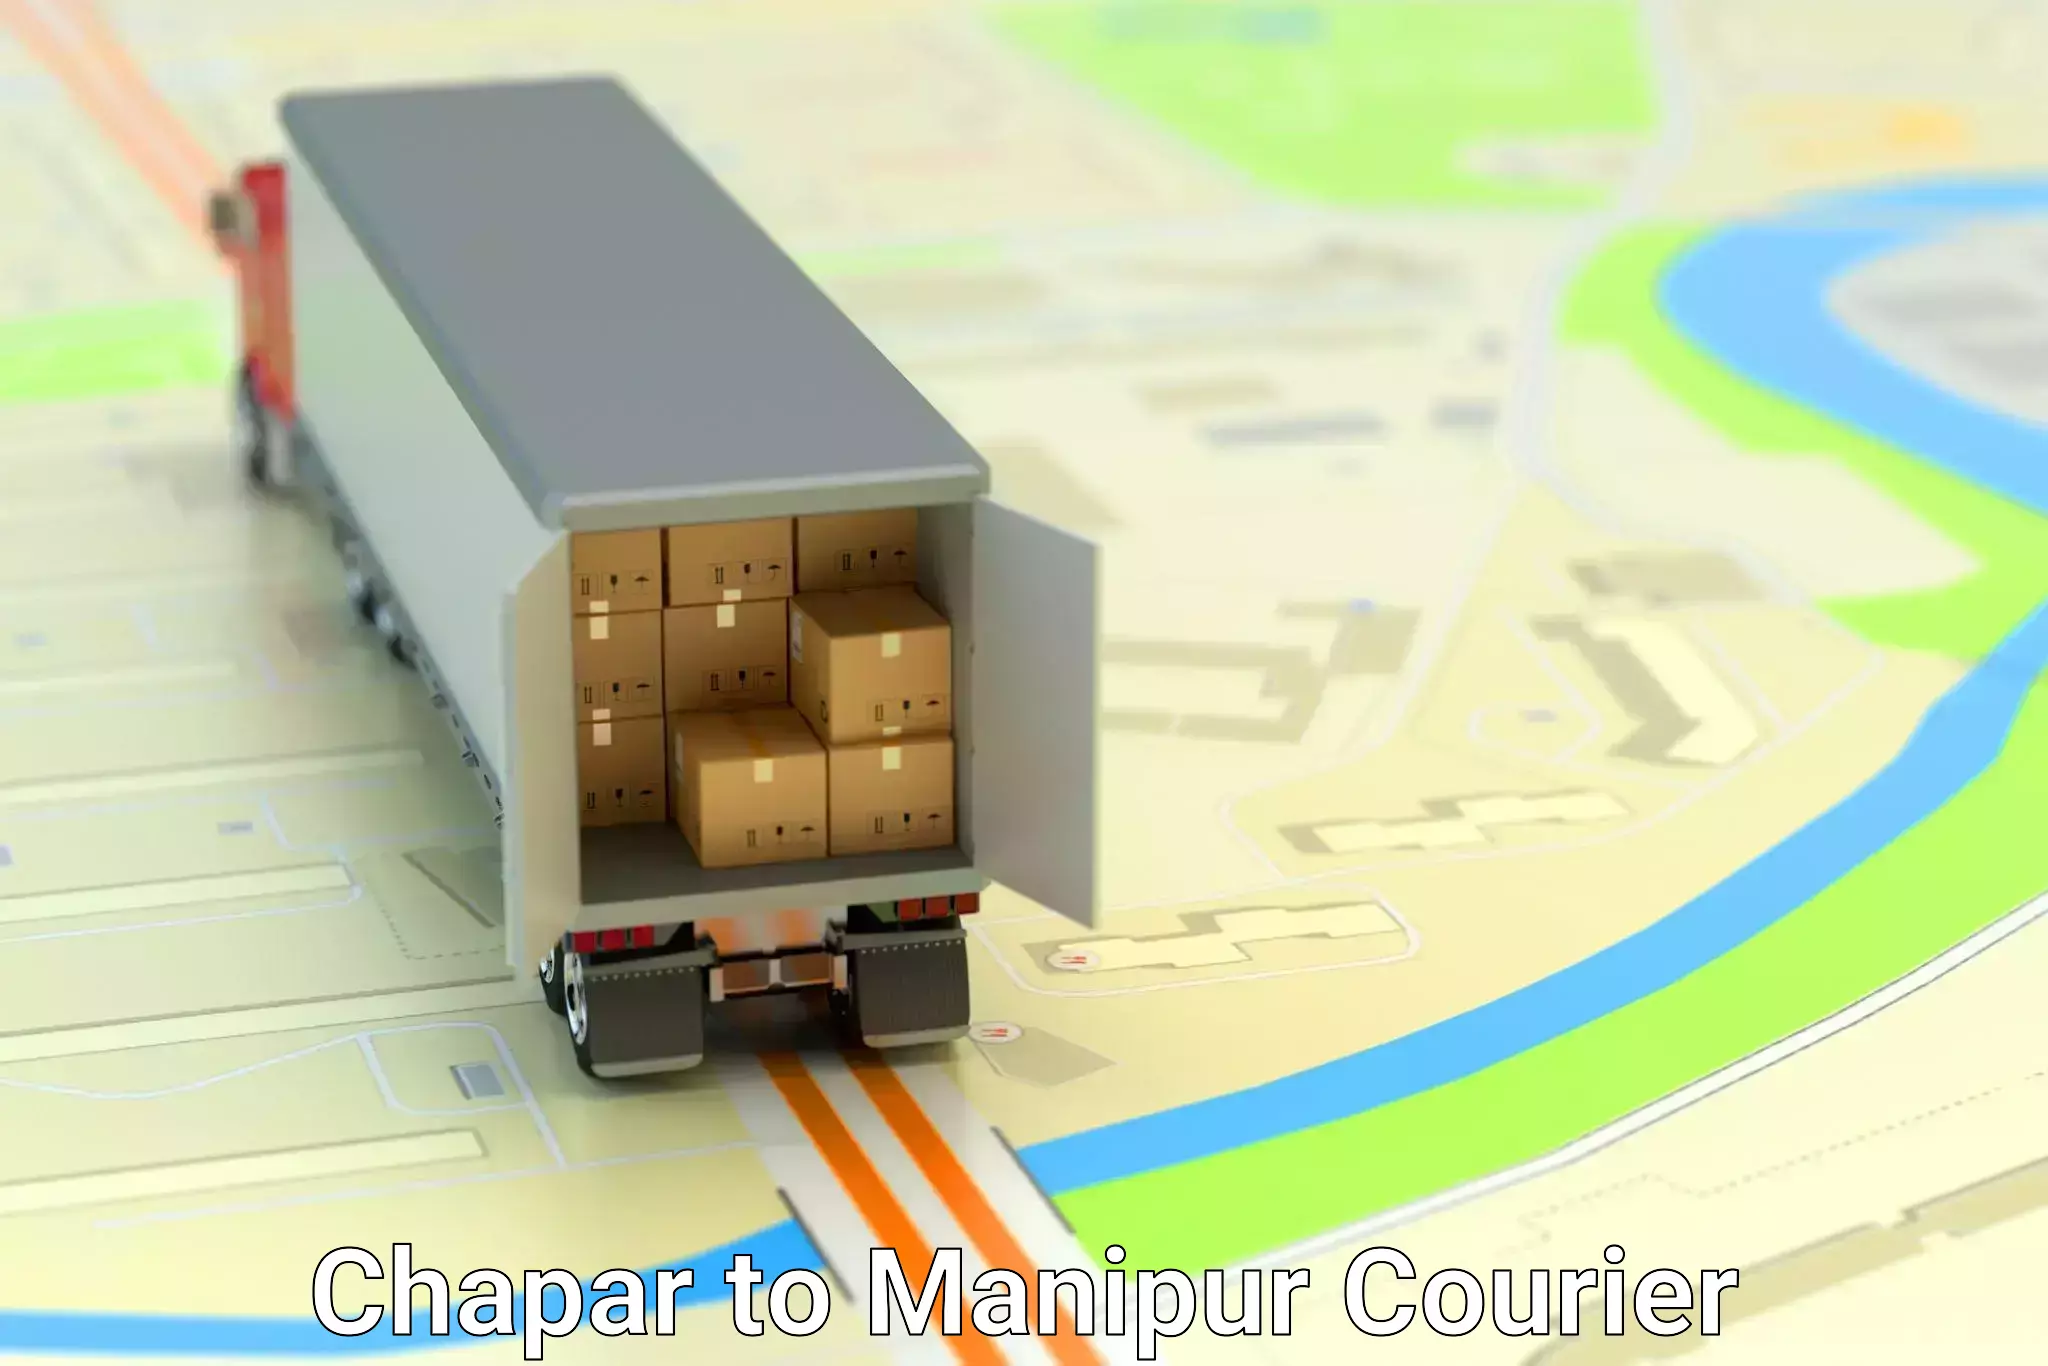 Logistics service provider Chapar to Senapati